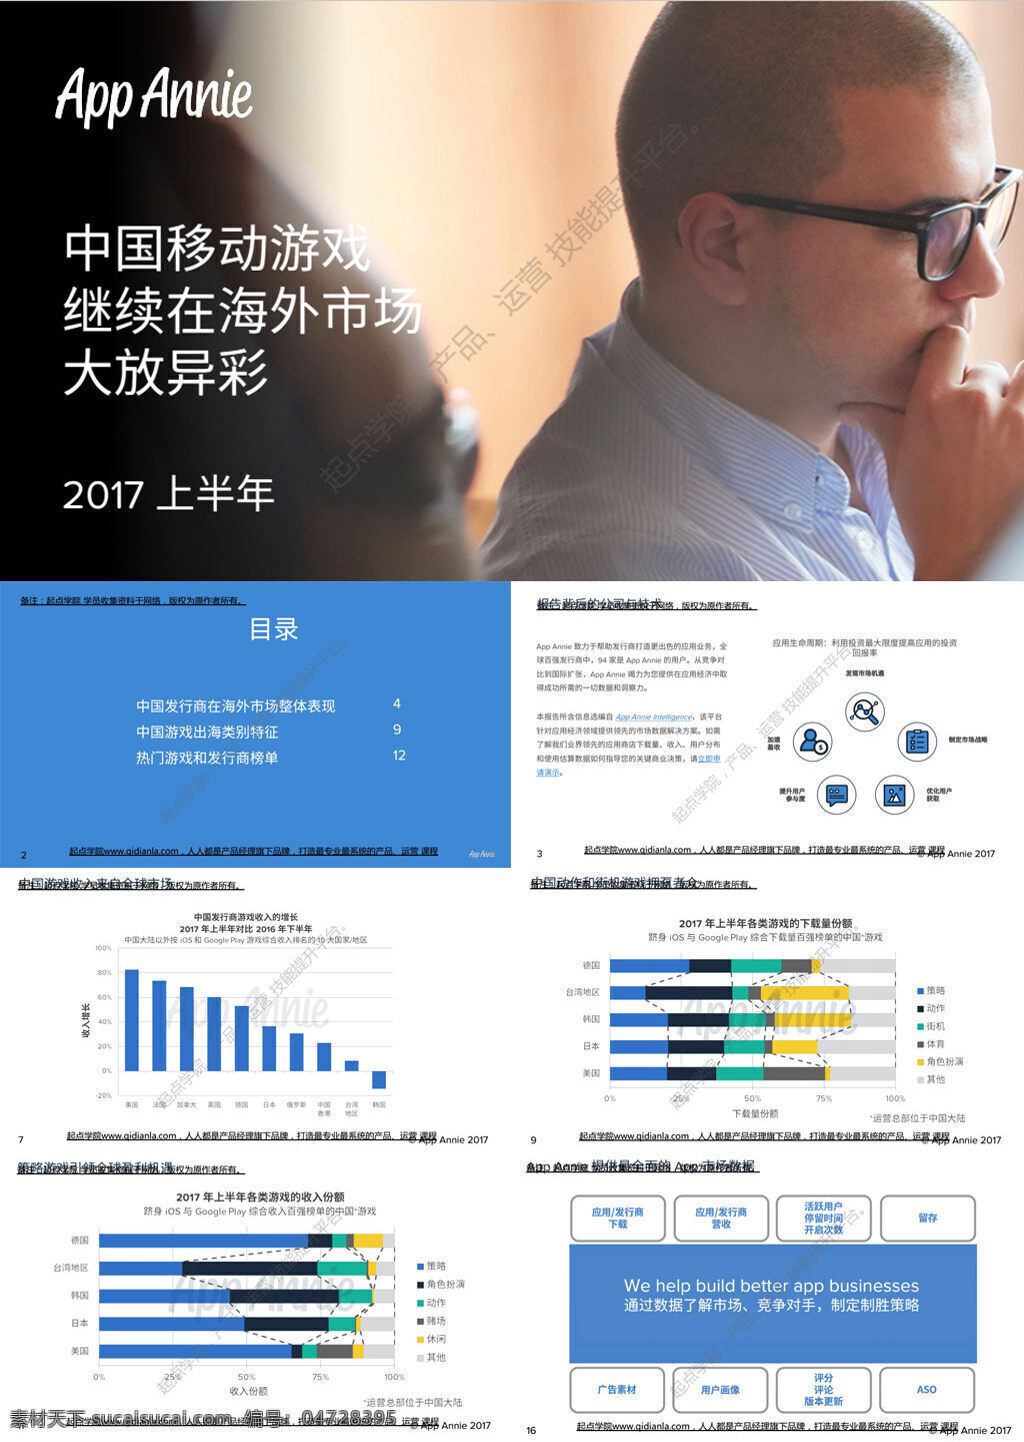 2017 上半年 中国移动 游戏 海外 市场 行业 研究报告 文库 专业资料 论文 行业分析 行业报告 数据分析 手游 移动游戏 海外市场 研究